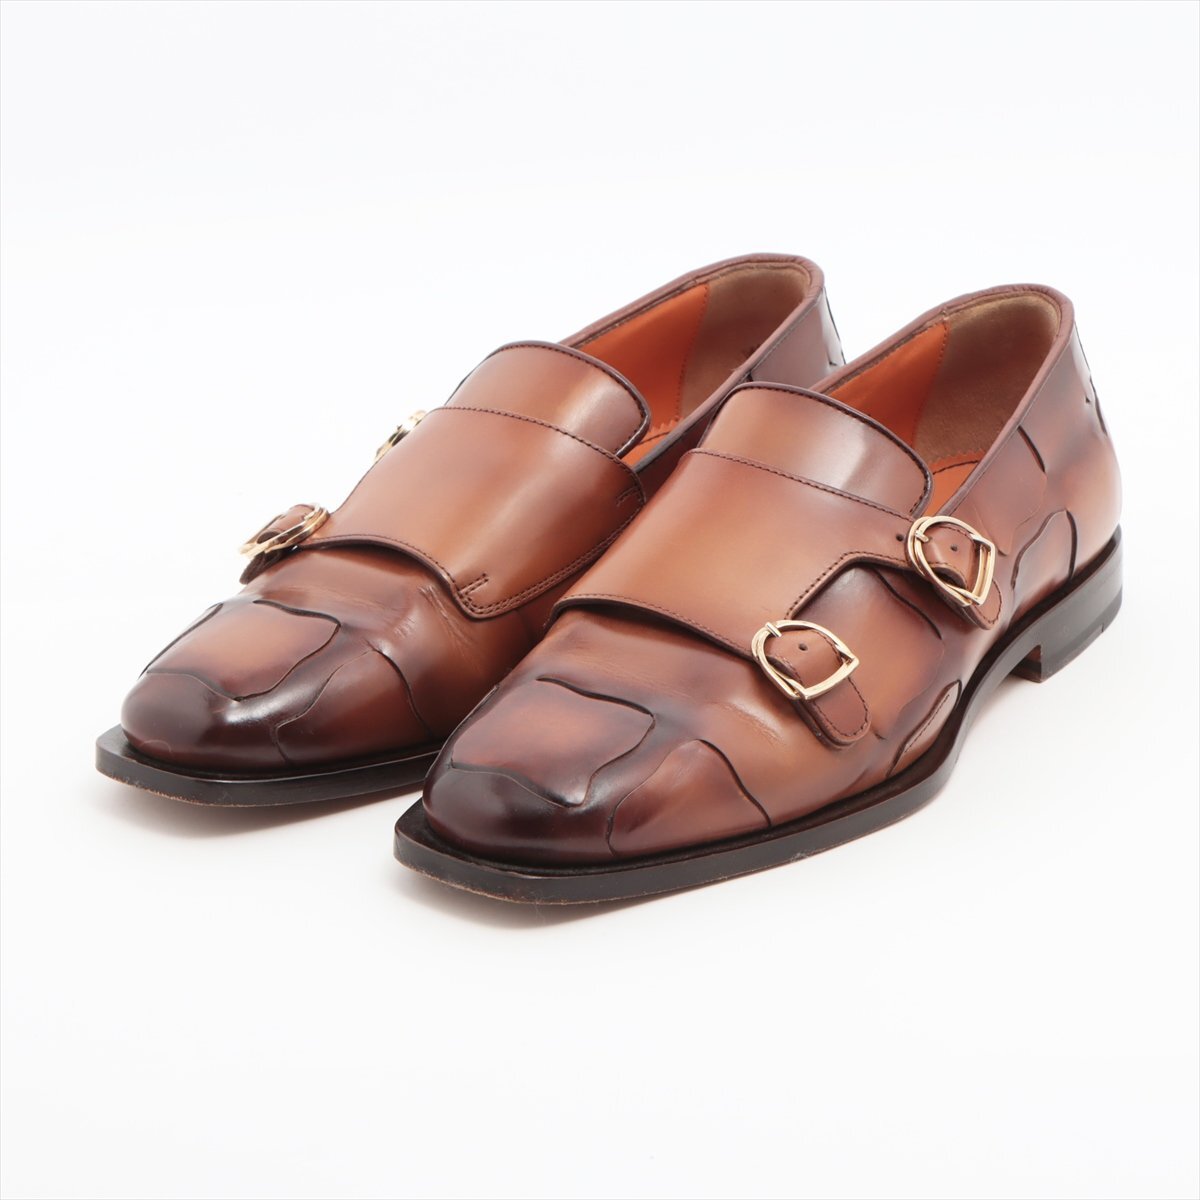 1 иен # превосходный товар # солнечный to-ni# двойной monk ремешок кожа бизнес обувь двойной пряжка 6 Brown джентльмен обувь мужской MMM P17-9